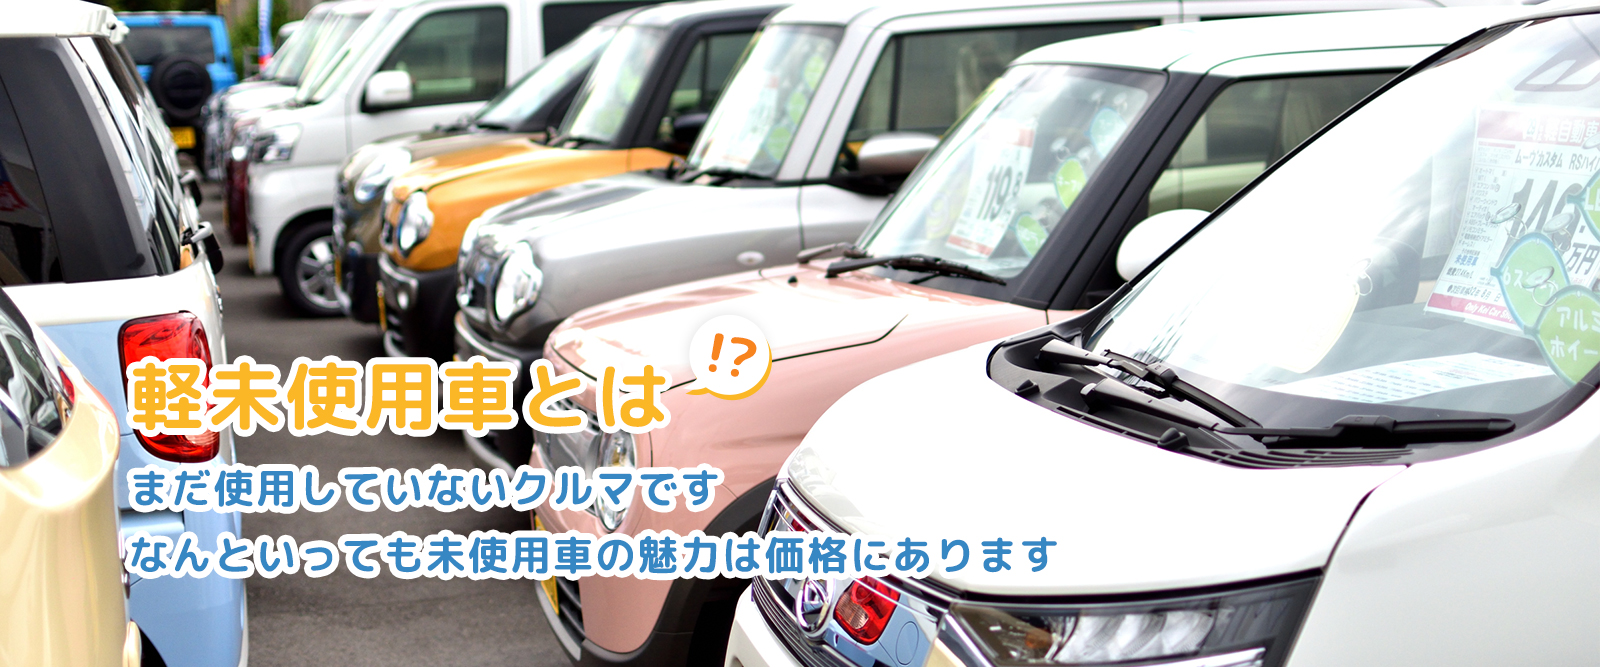 エスエスオート 軽未使用車専門店 軽自動車なら愛媛四国中央最大級150台在庫